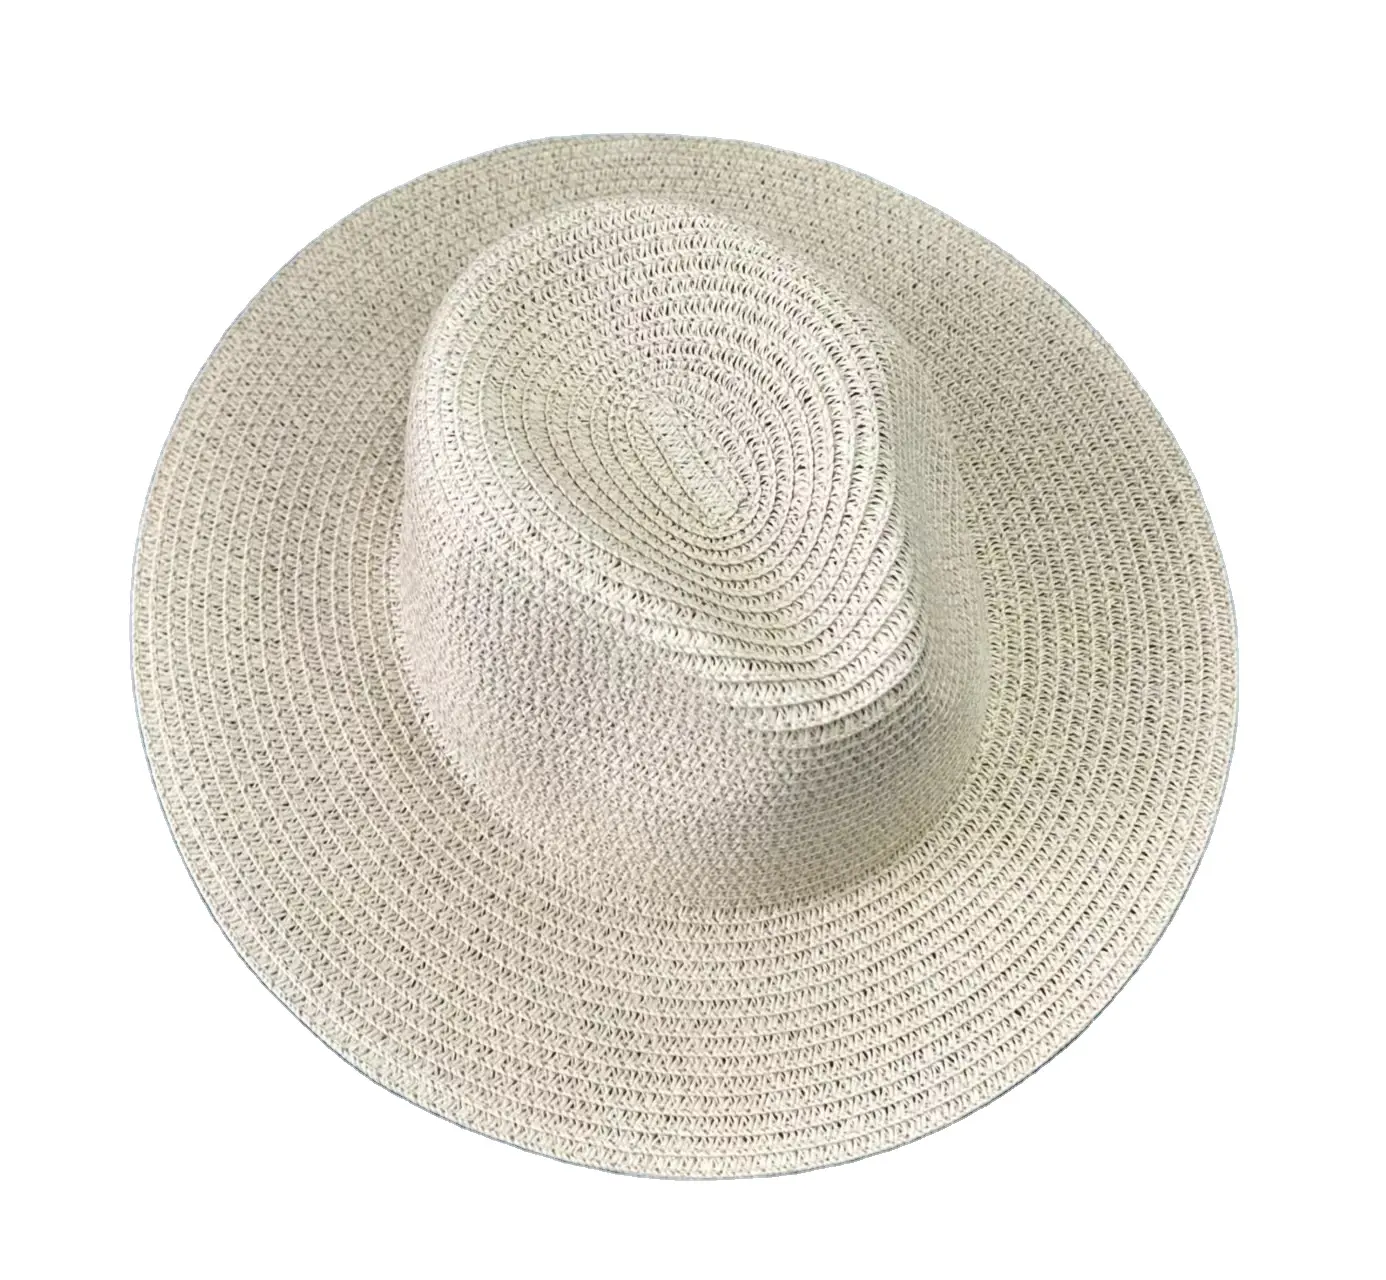 Diskon besar kualitas Super Musim Panas Panama topi jerami penjaga pantai uniseks tepi lebar berselancar kustom musim panas topi jerami alami dengan Logo